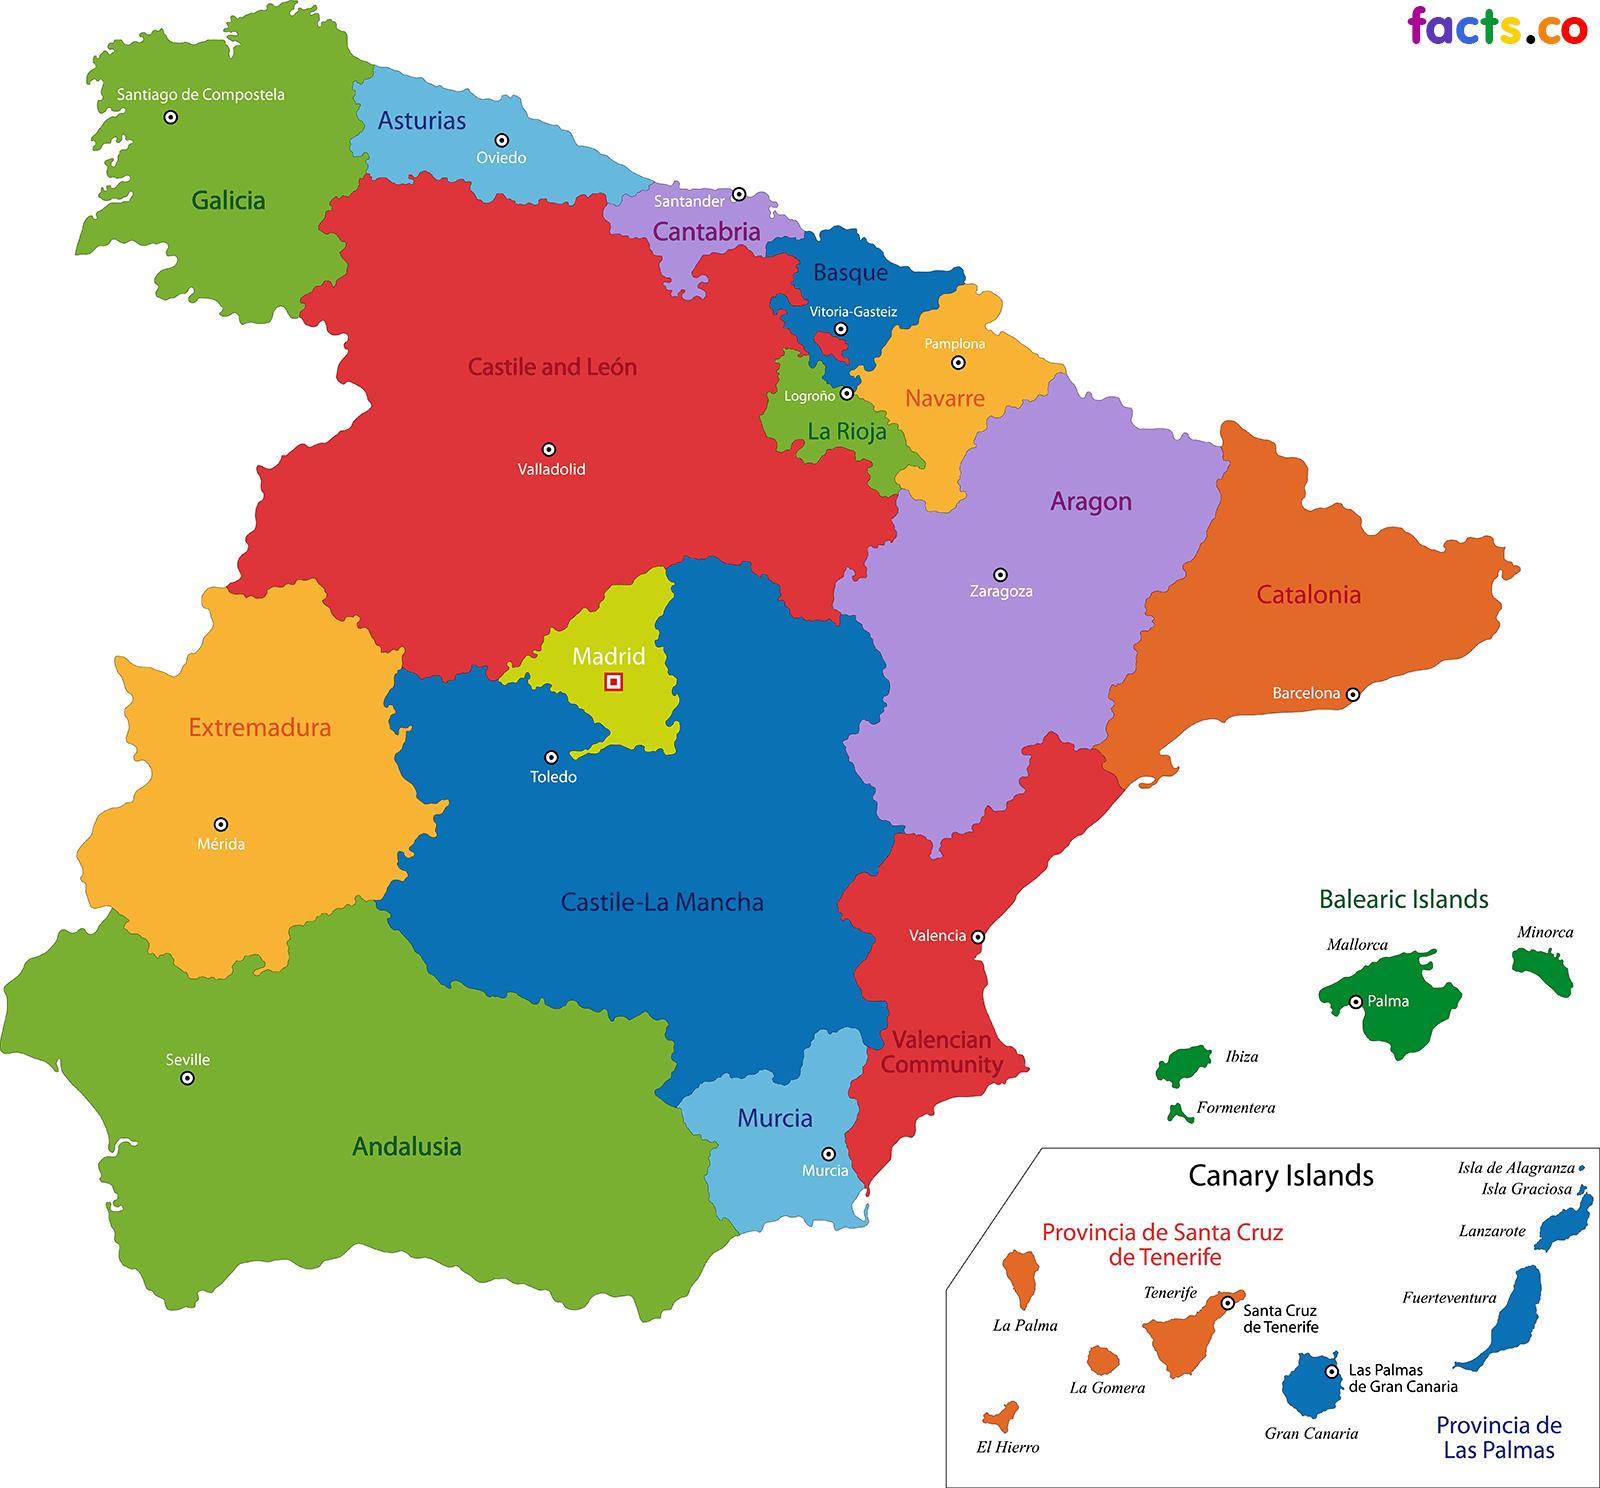 O mapa detalhado da espanha com capitais de regiões ou estados e